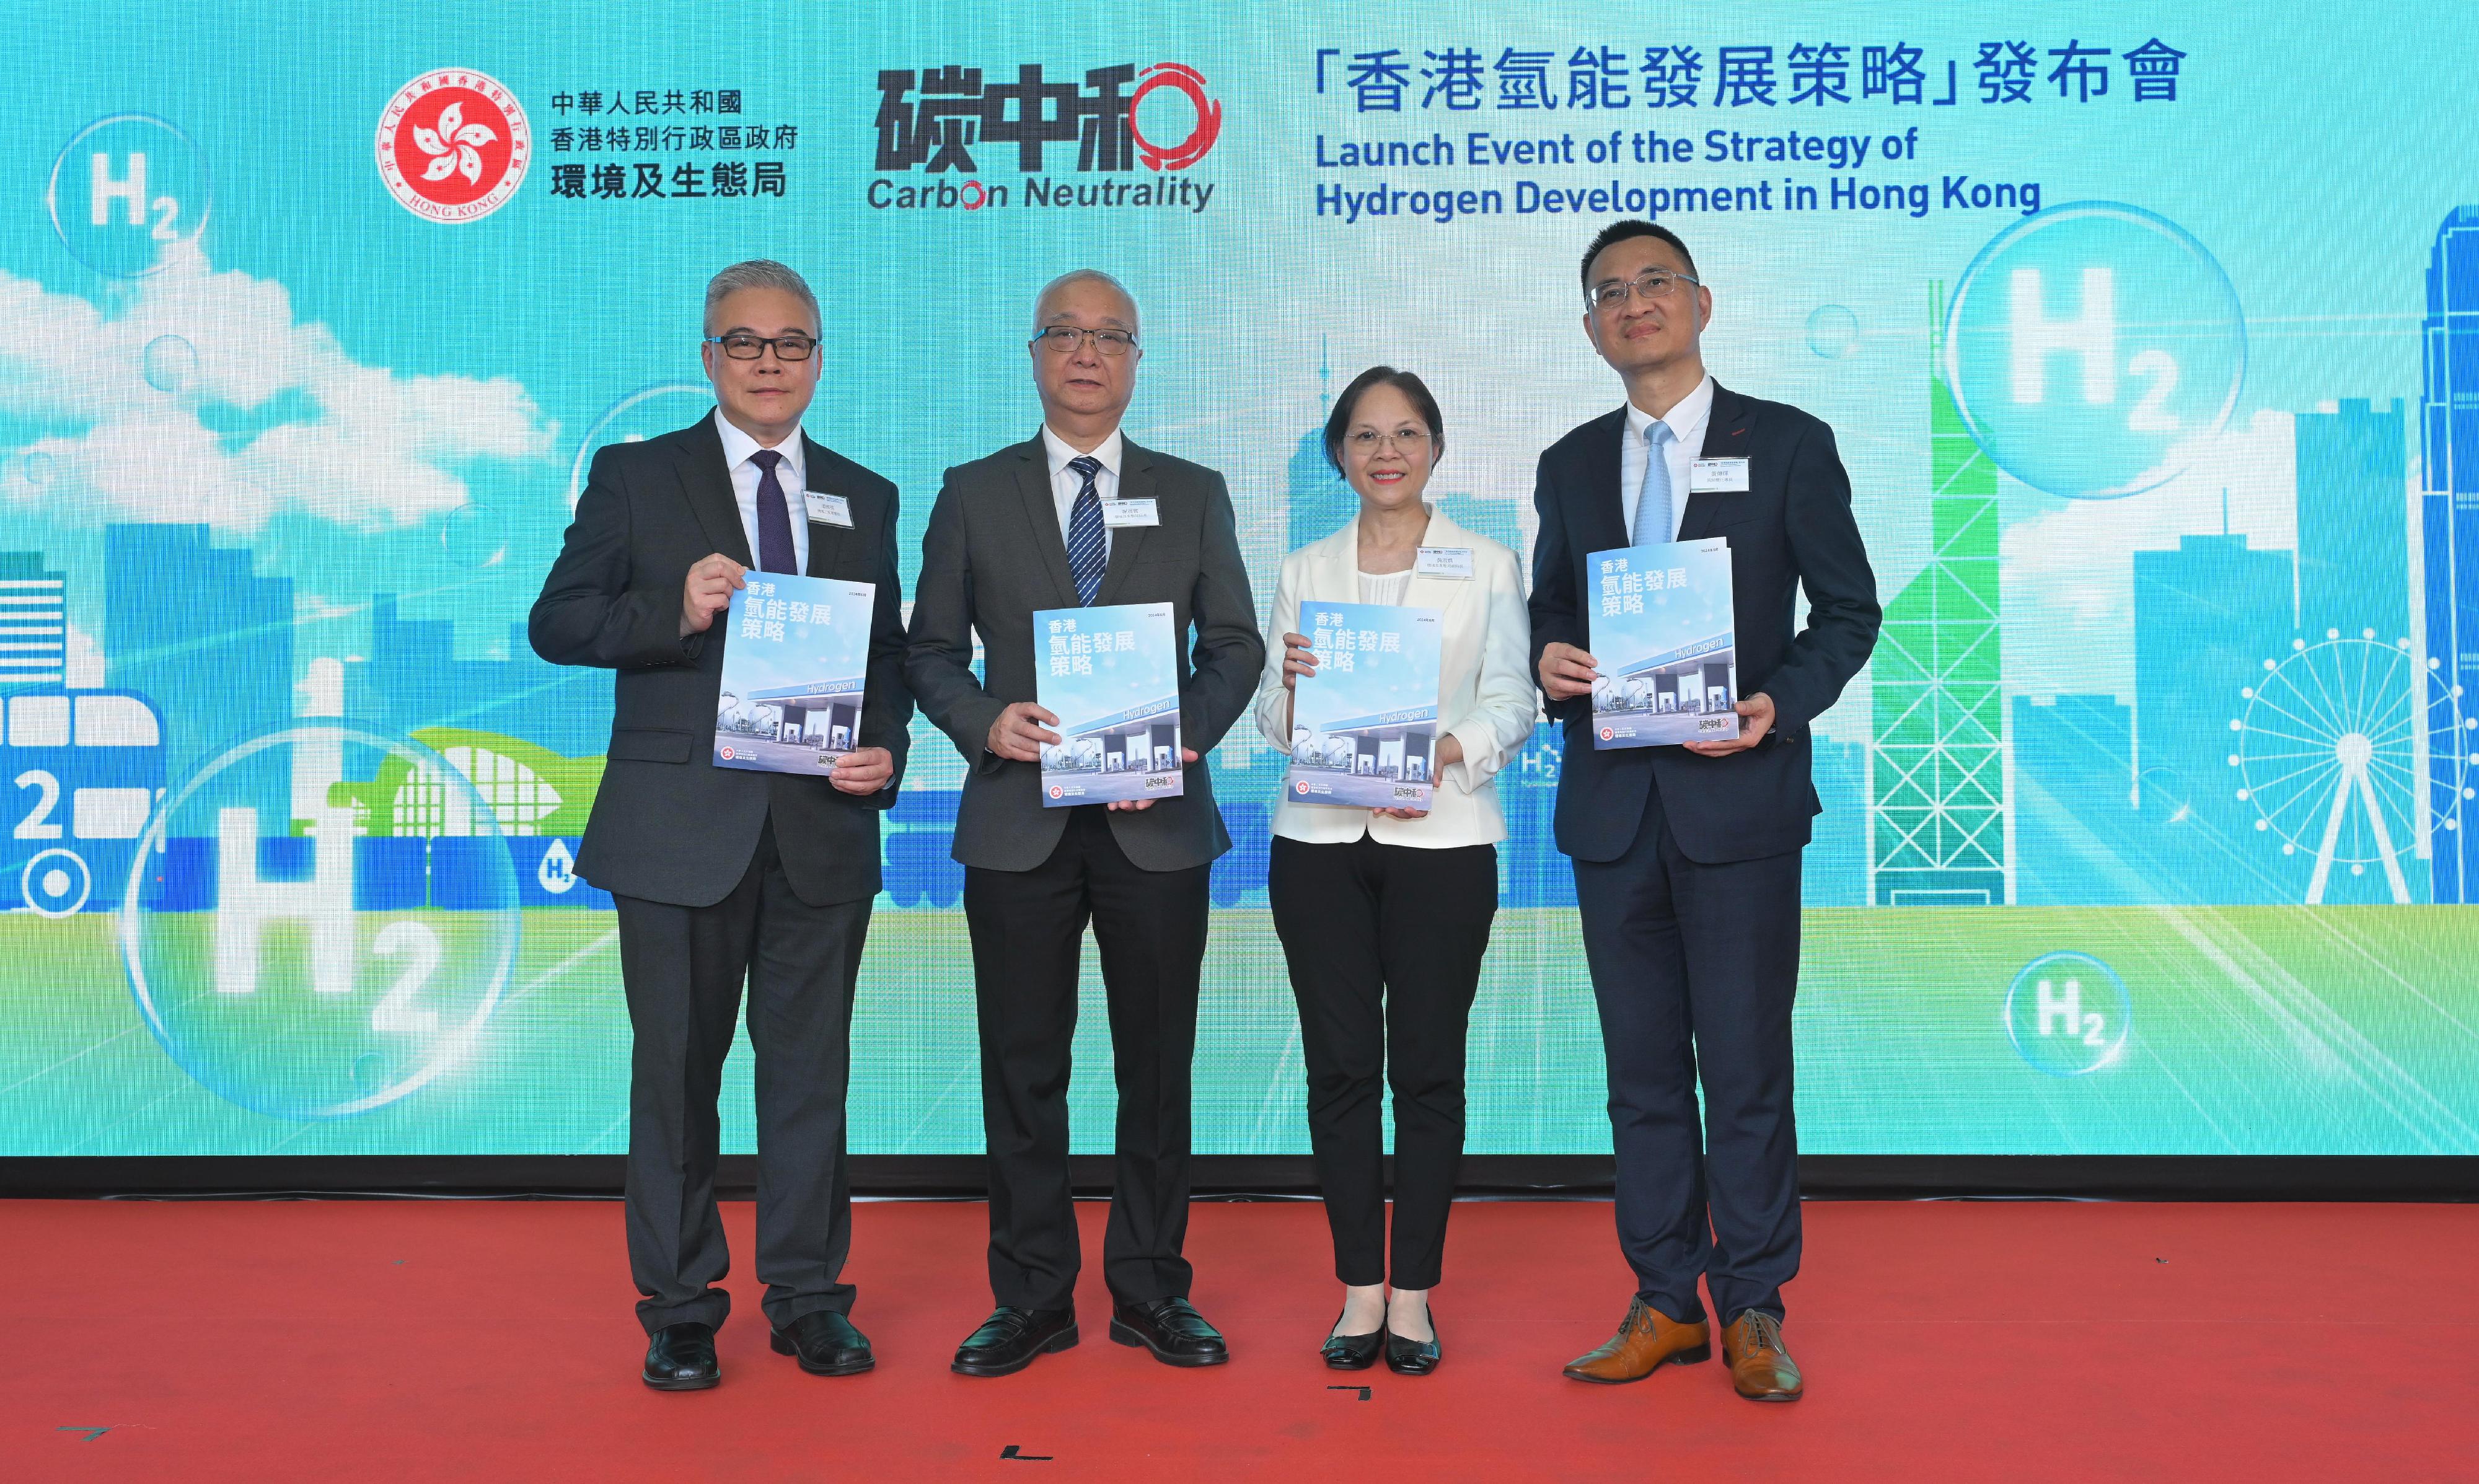 政府今日（六月十七日）公布《香港氢能发展策略》。环境及生态局局长谢展寰（左二）、环境及生态局副局长黄淑娴（右二）、气候变化专员黄传辉（右一）和机电工程署署长潘国英（左一）在发布会上合照。